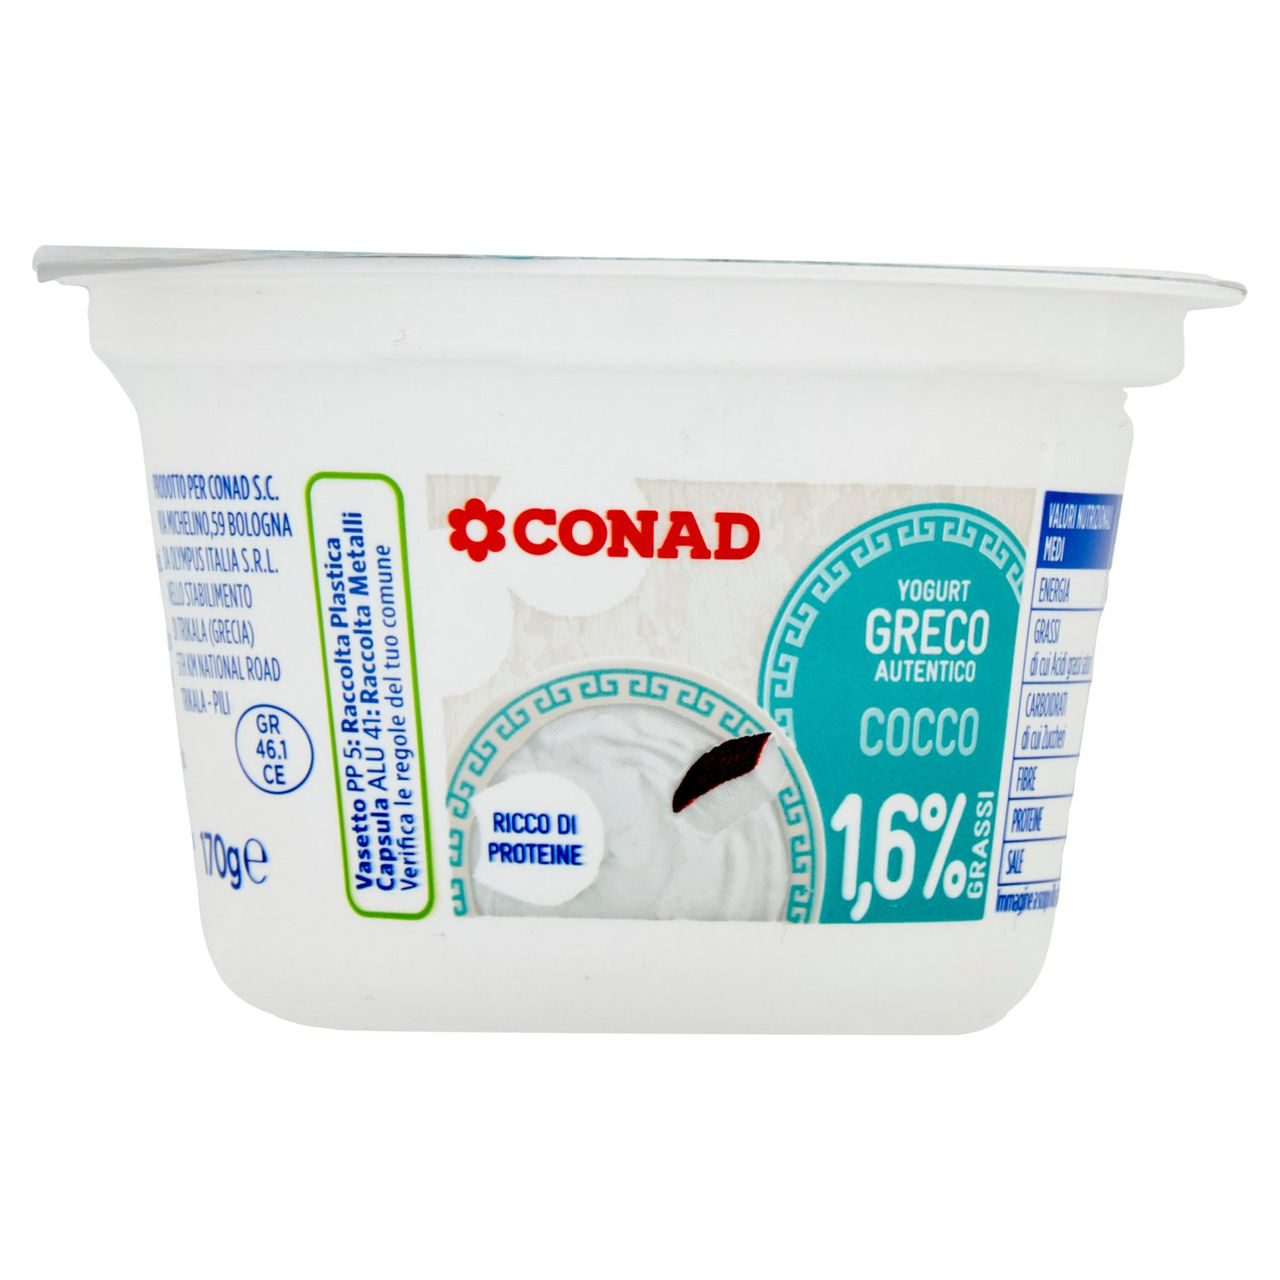 Yogurt Greco Autentico Cocco Conad online